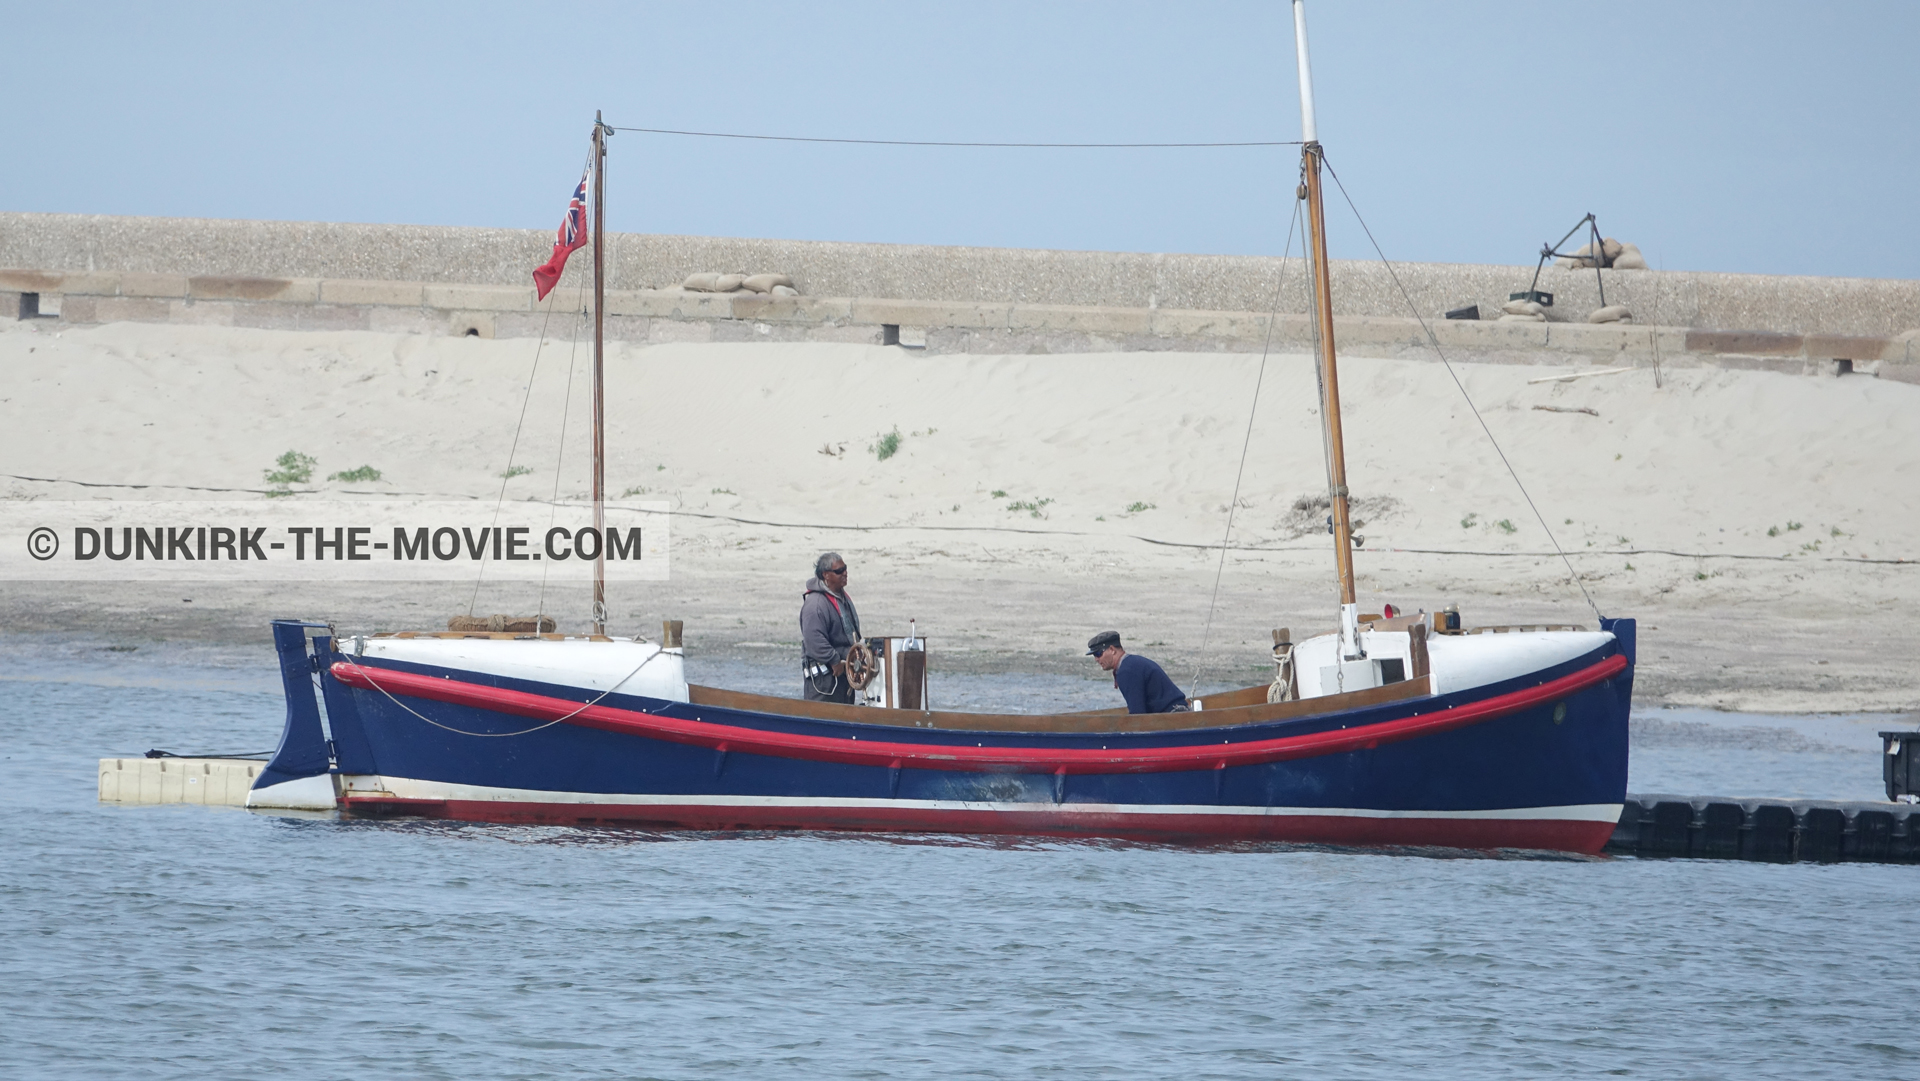 Fotos con barco, muelle del ESTE, mares calma, del bote salvavidas Henry Finlay,  durante el rodaje de la película Dunkerque de Nolan